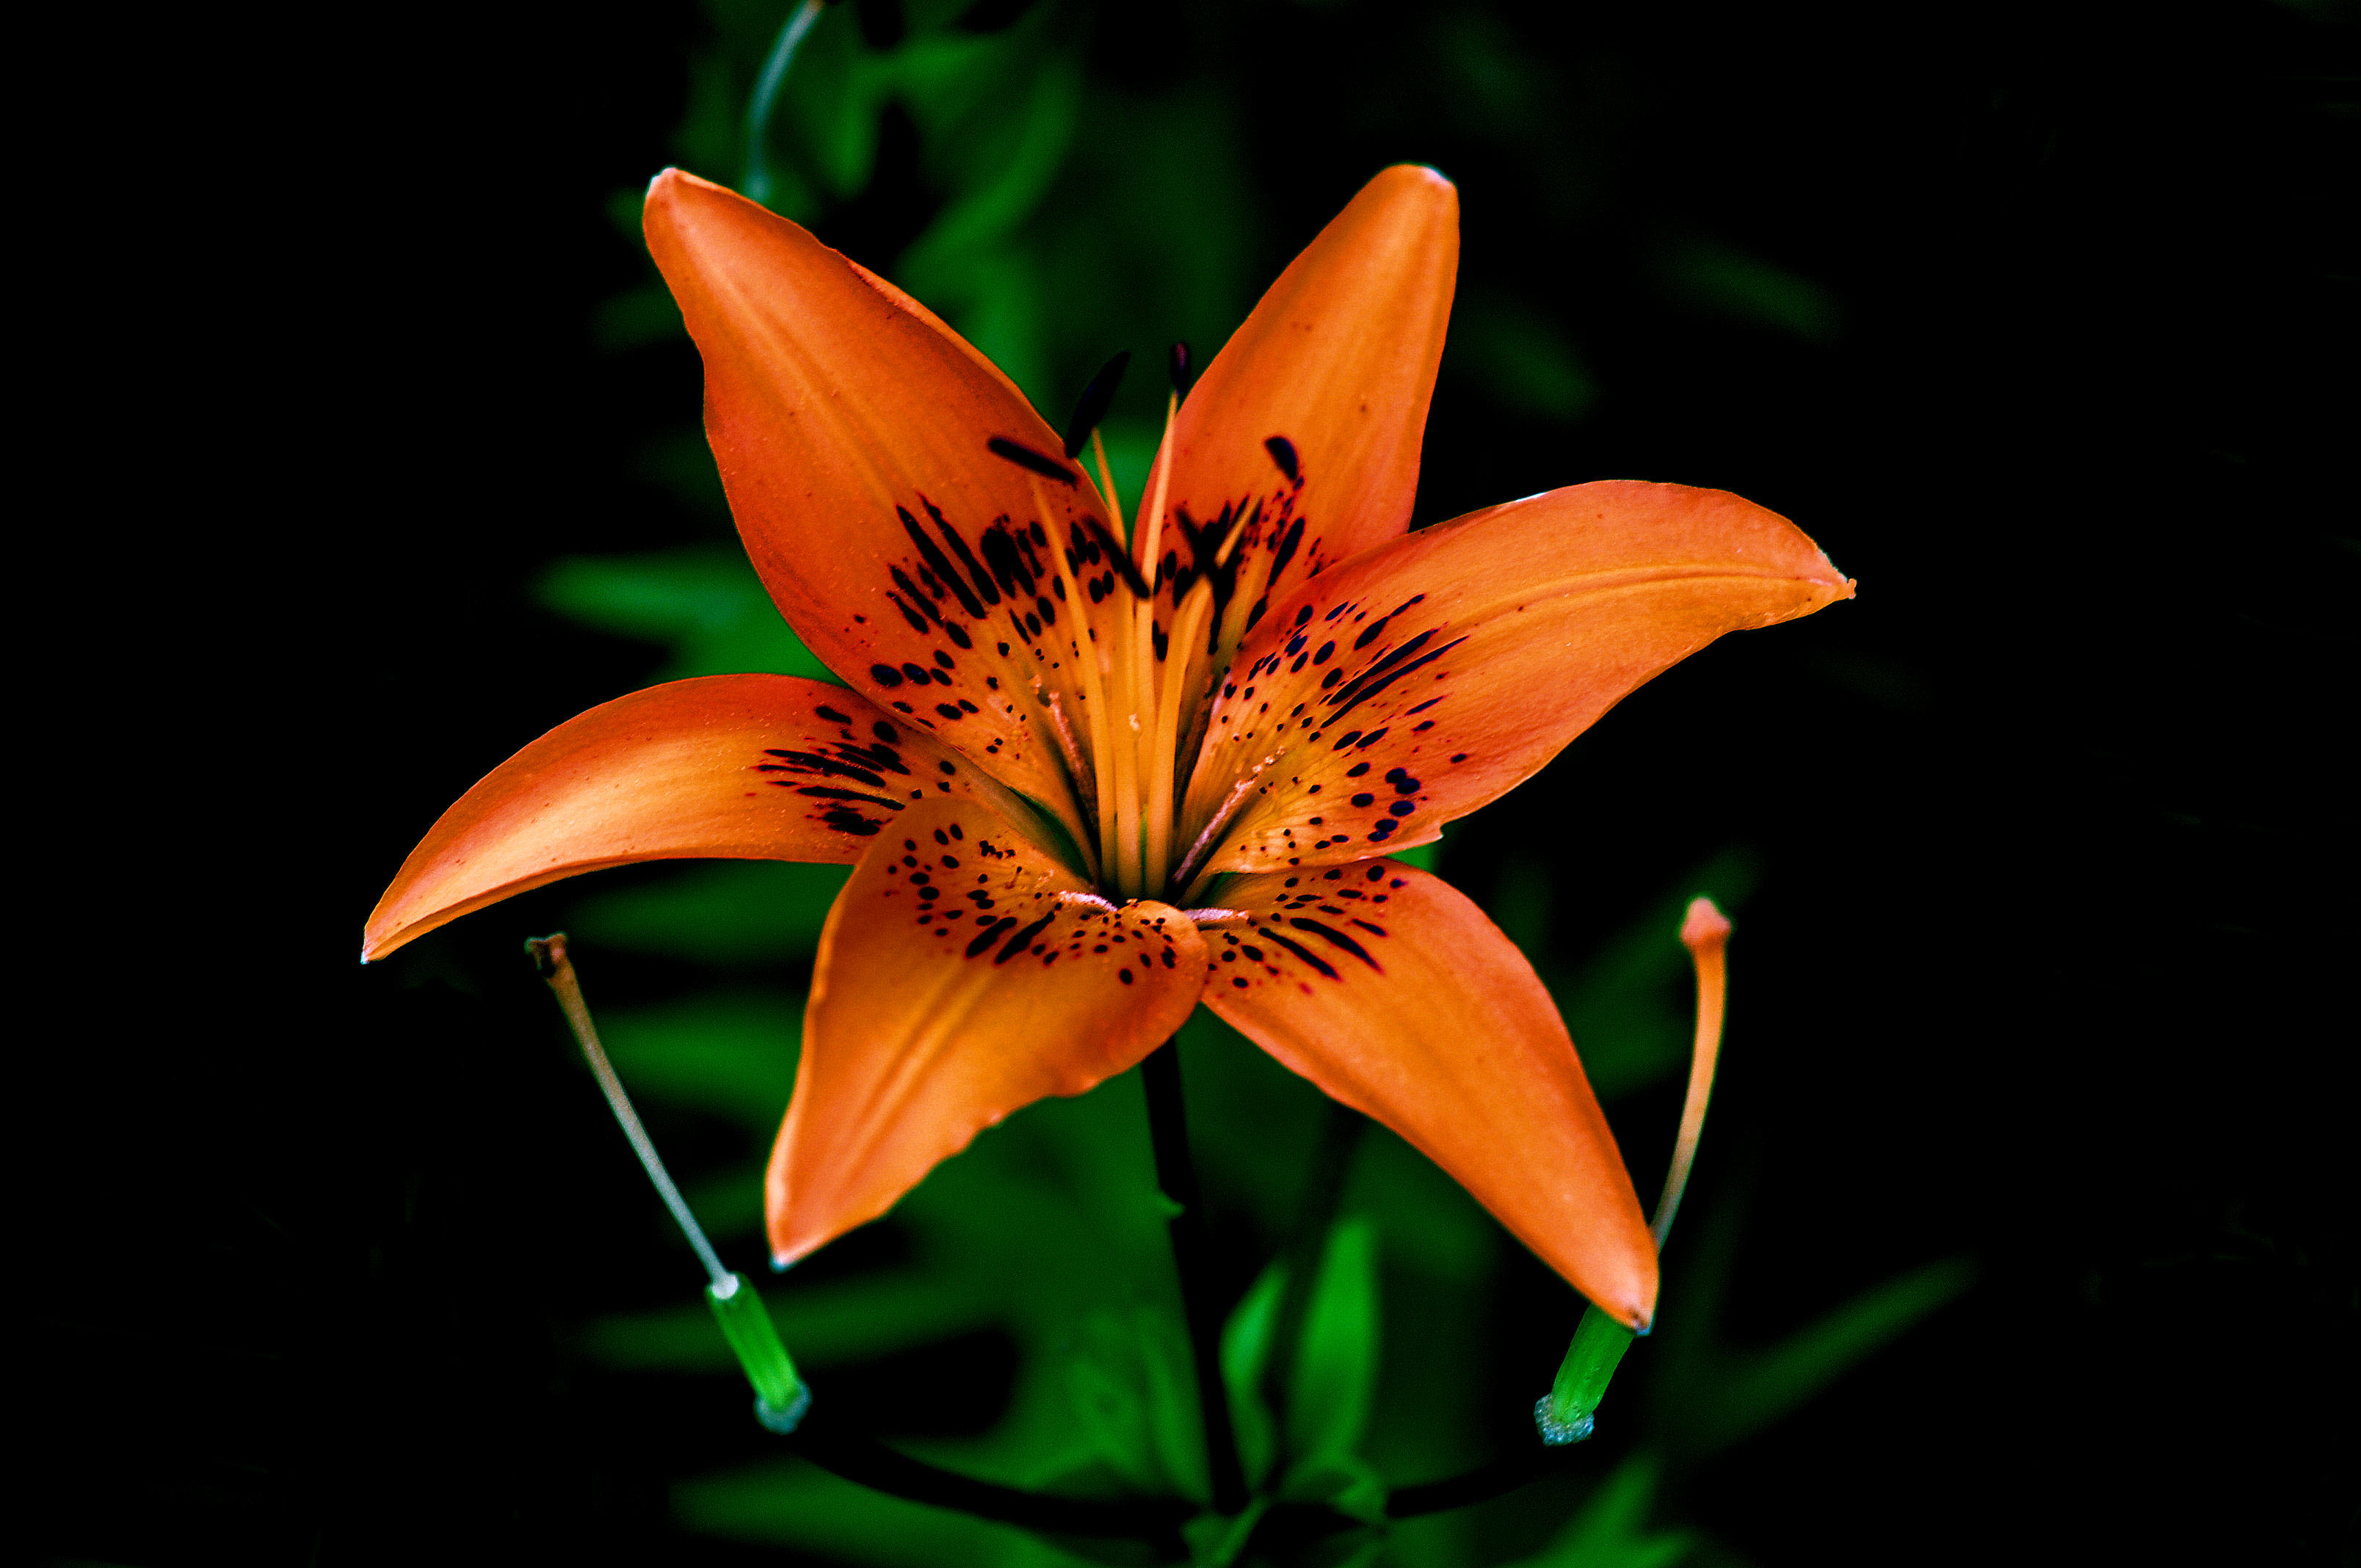 Фото лилия одинокий цветок цветочная композиция - бесплатные картинки на Fonwall